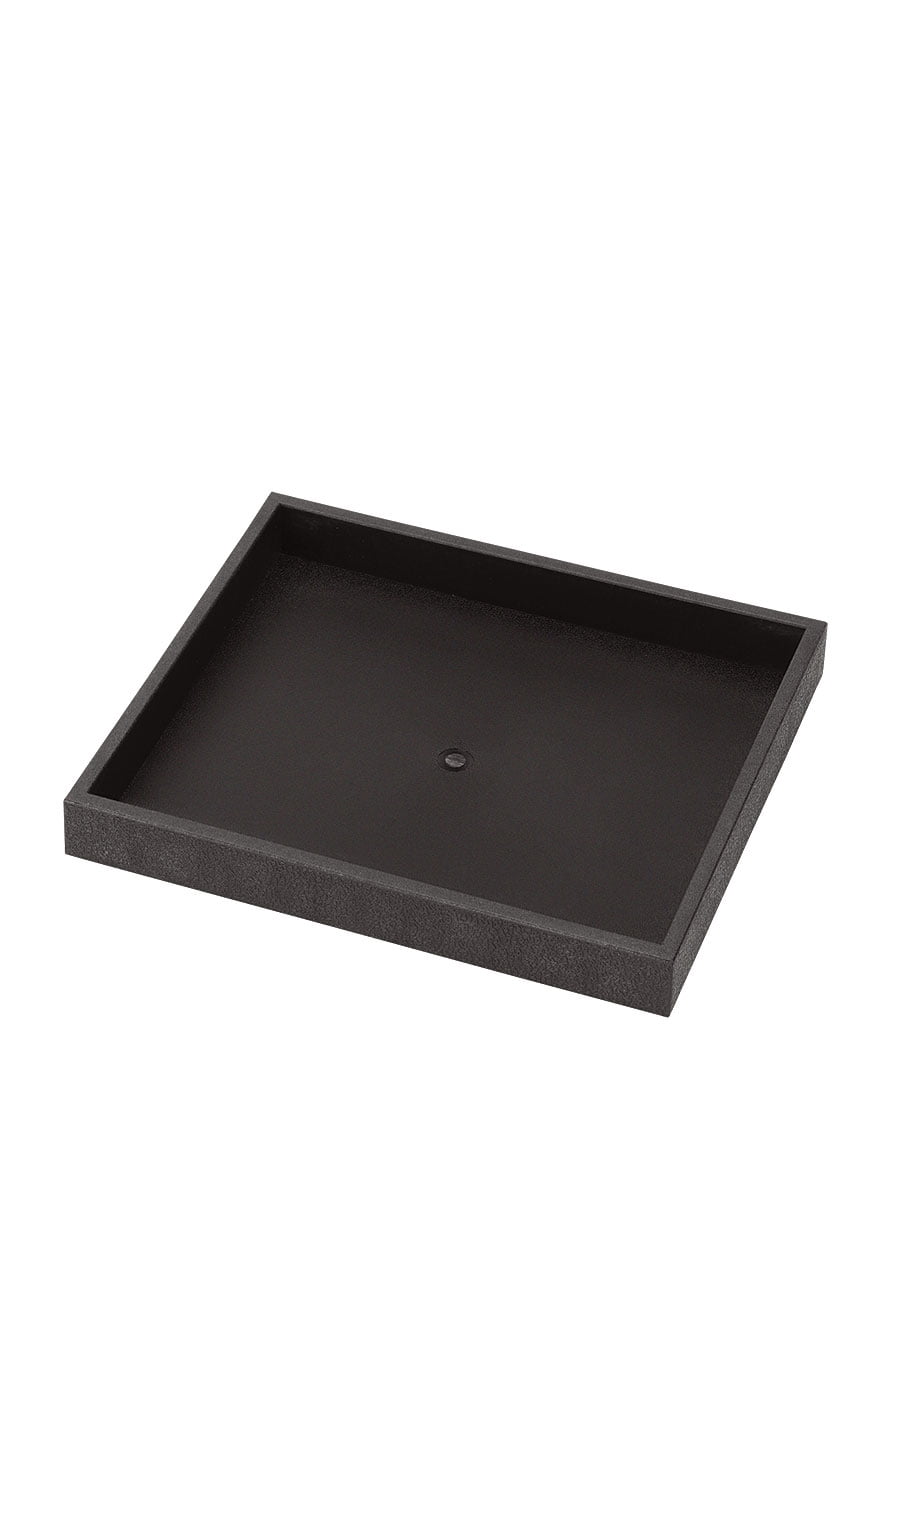 10 Pc Black Plastic Stackable Small Jewelry Inserts Trays 8 1/4"L x 7 1/4"W x1"D 